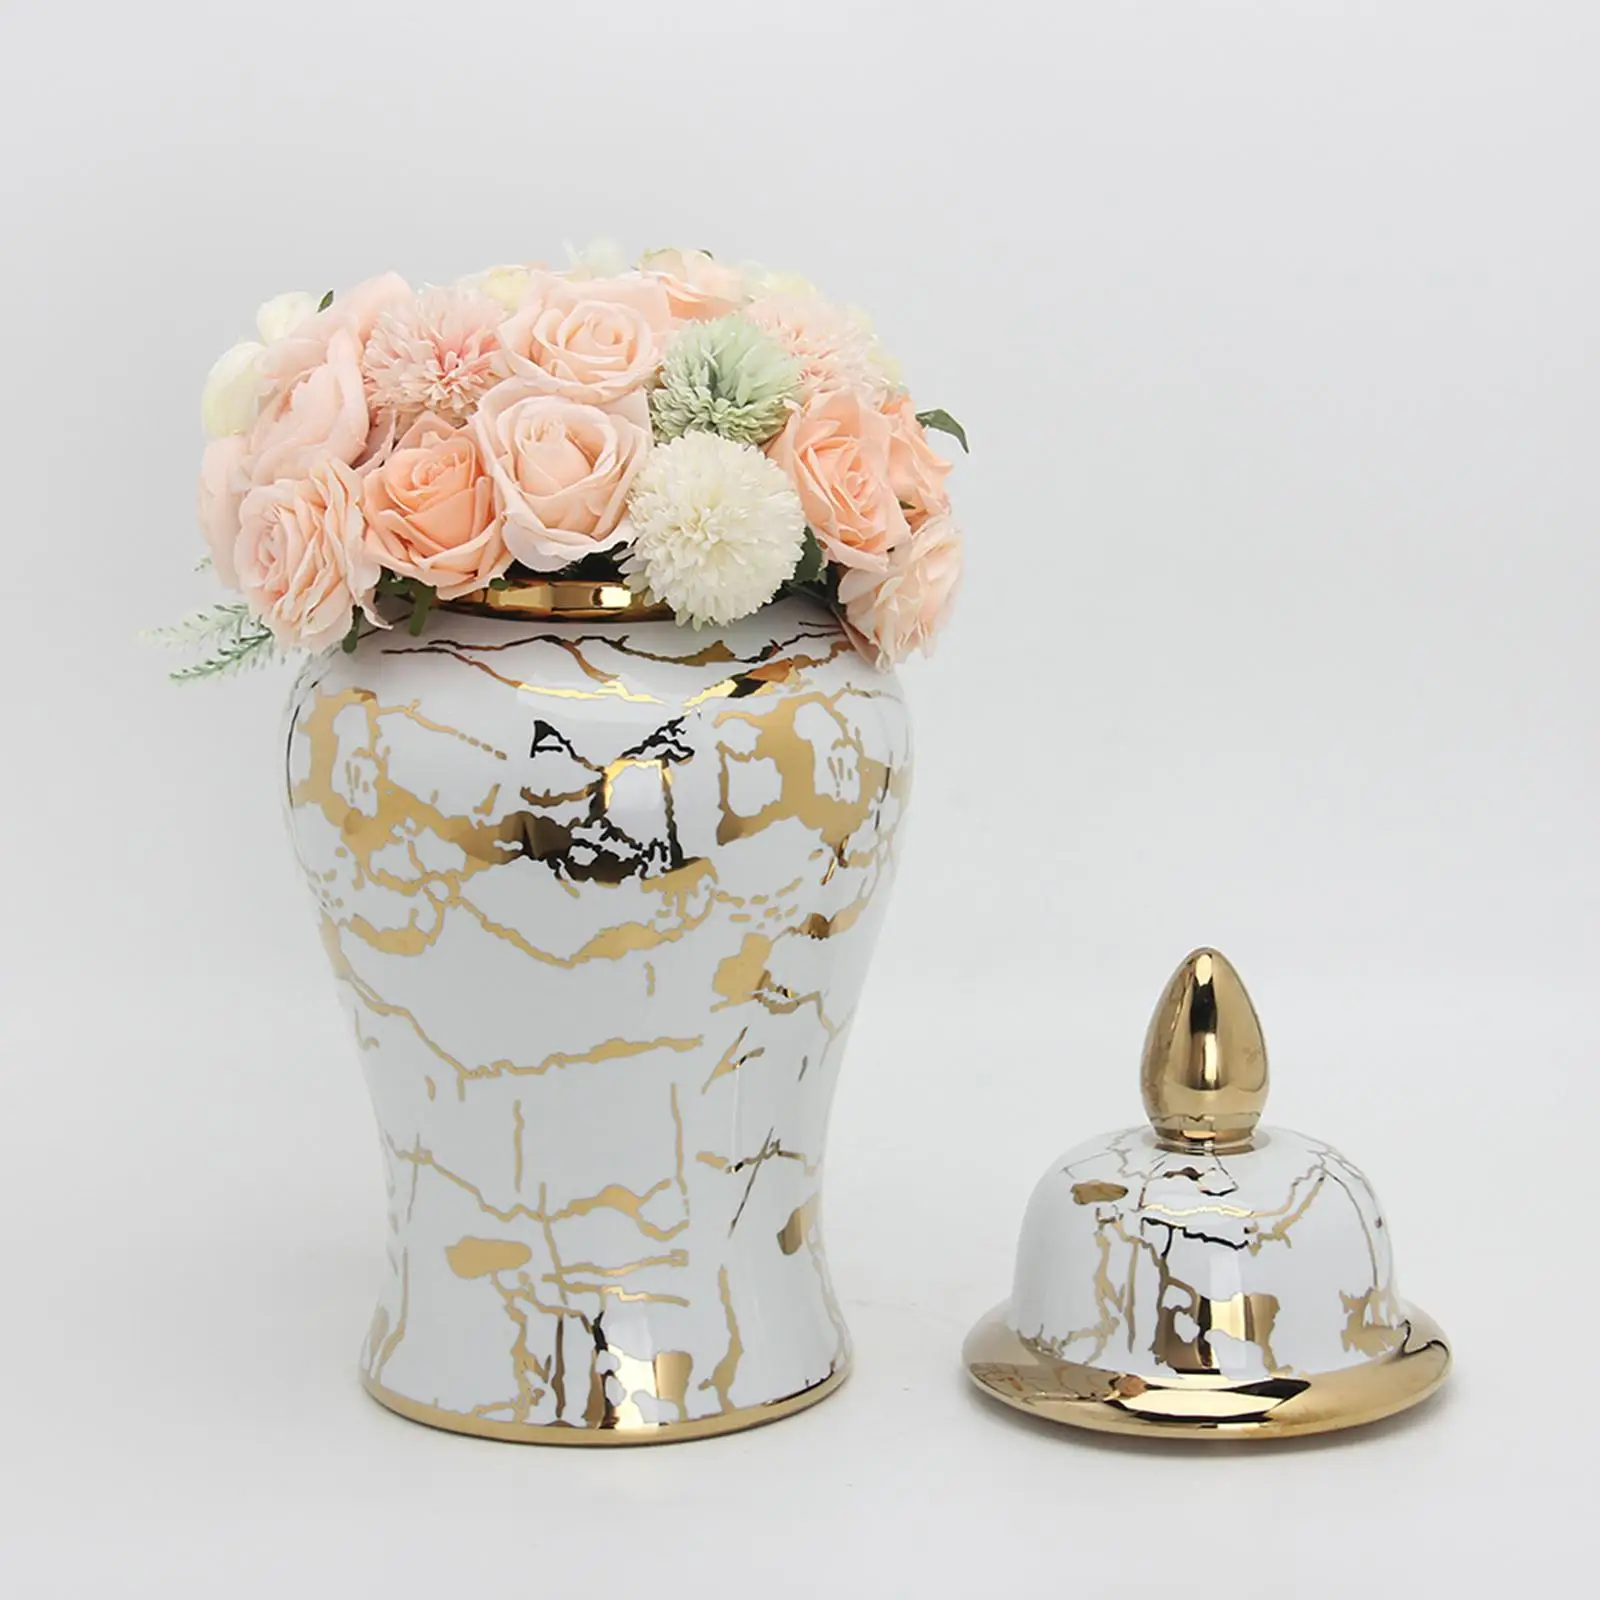 Flower Vase Storage Jar with Lid Temple Jar Desktop Tea Tin Ceramic Ginger Jars for Home Accent Centerpiece Weddings Party Desk